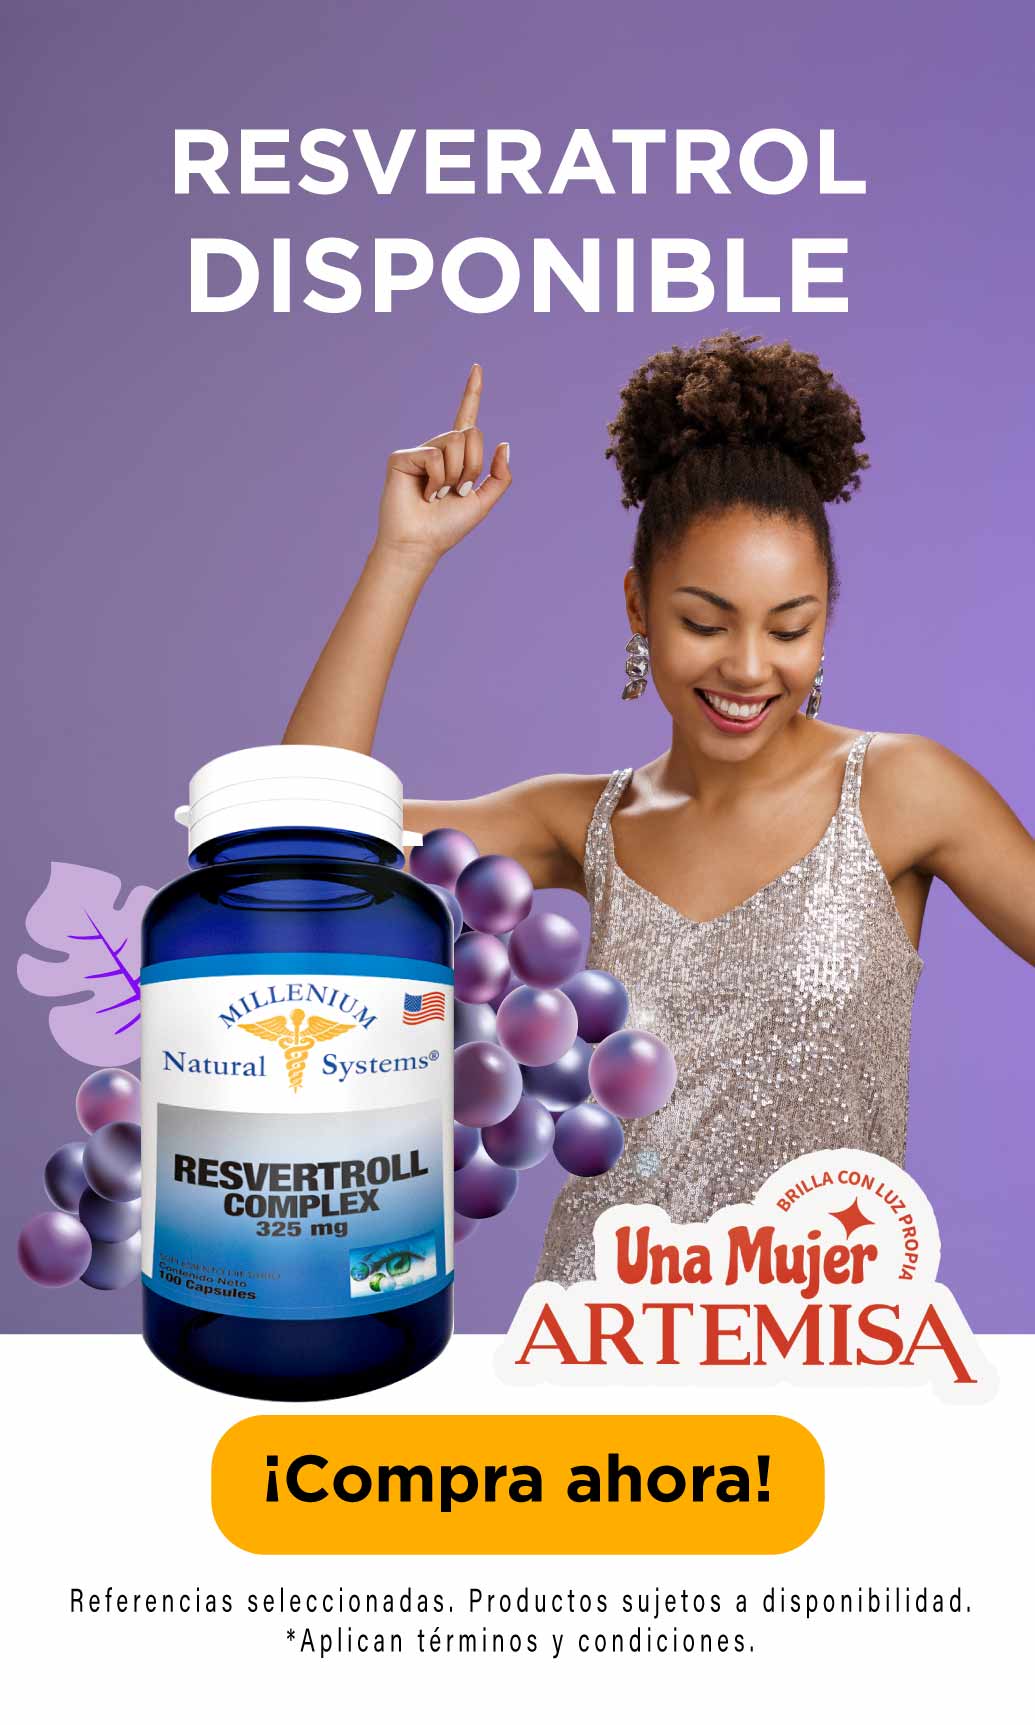 Resveratrol - Revertoll - Artemisa tienda Artemisa - Natural Systems